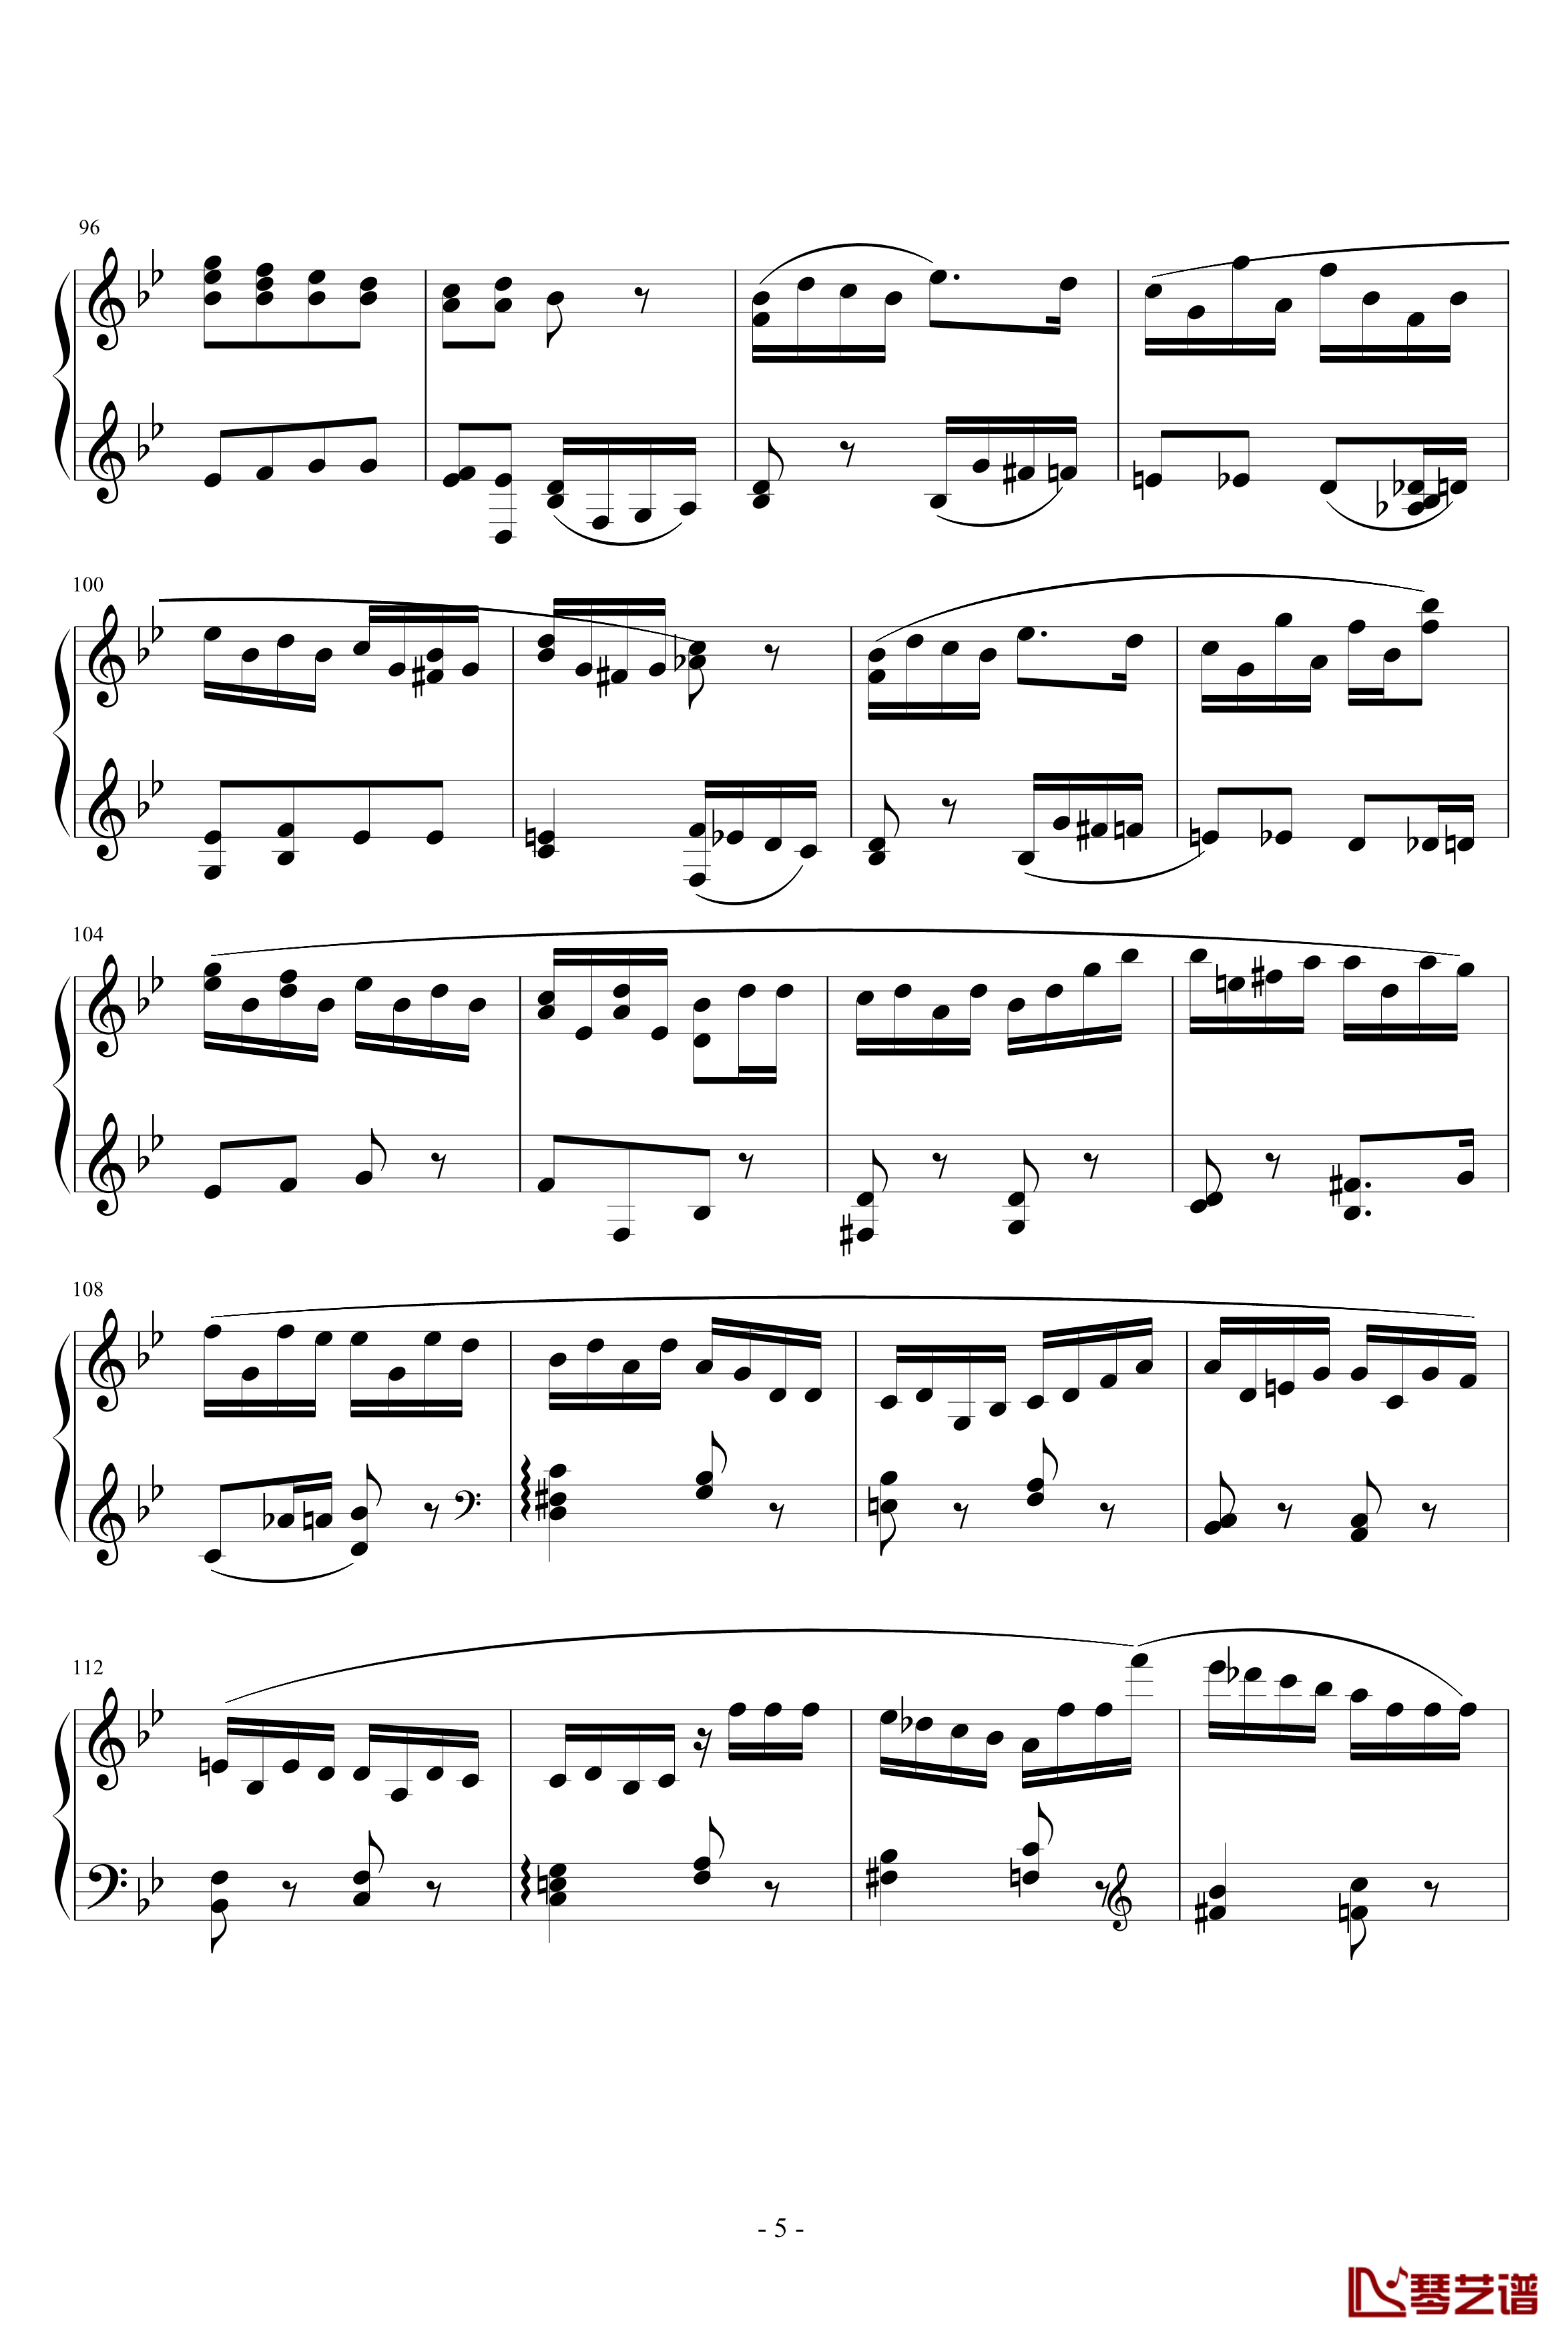 胡桃夹子序曲钢琴谱-柴科夫斯基-Peter Ilyich Tchaikovsky5